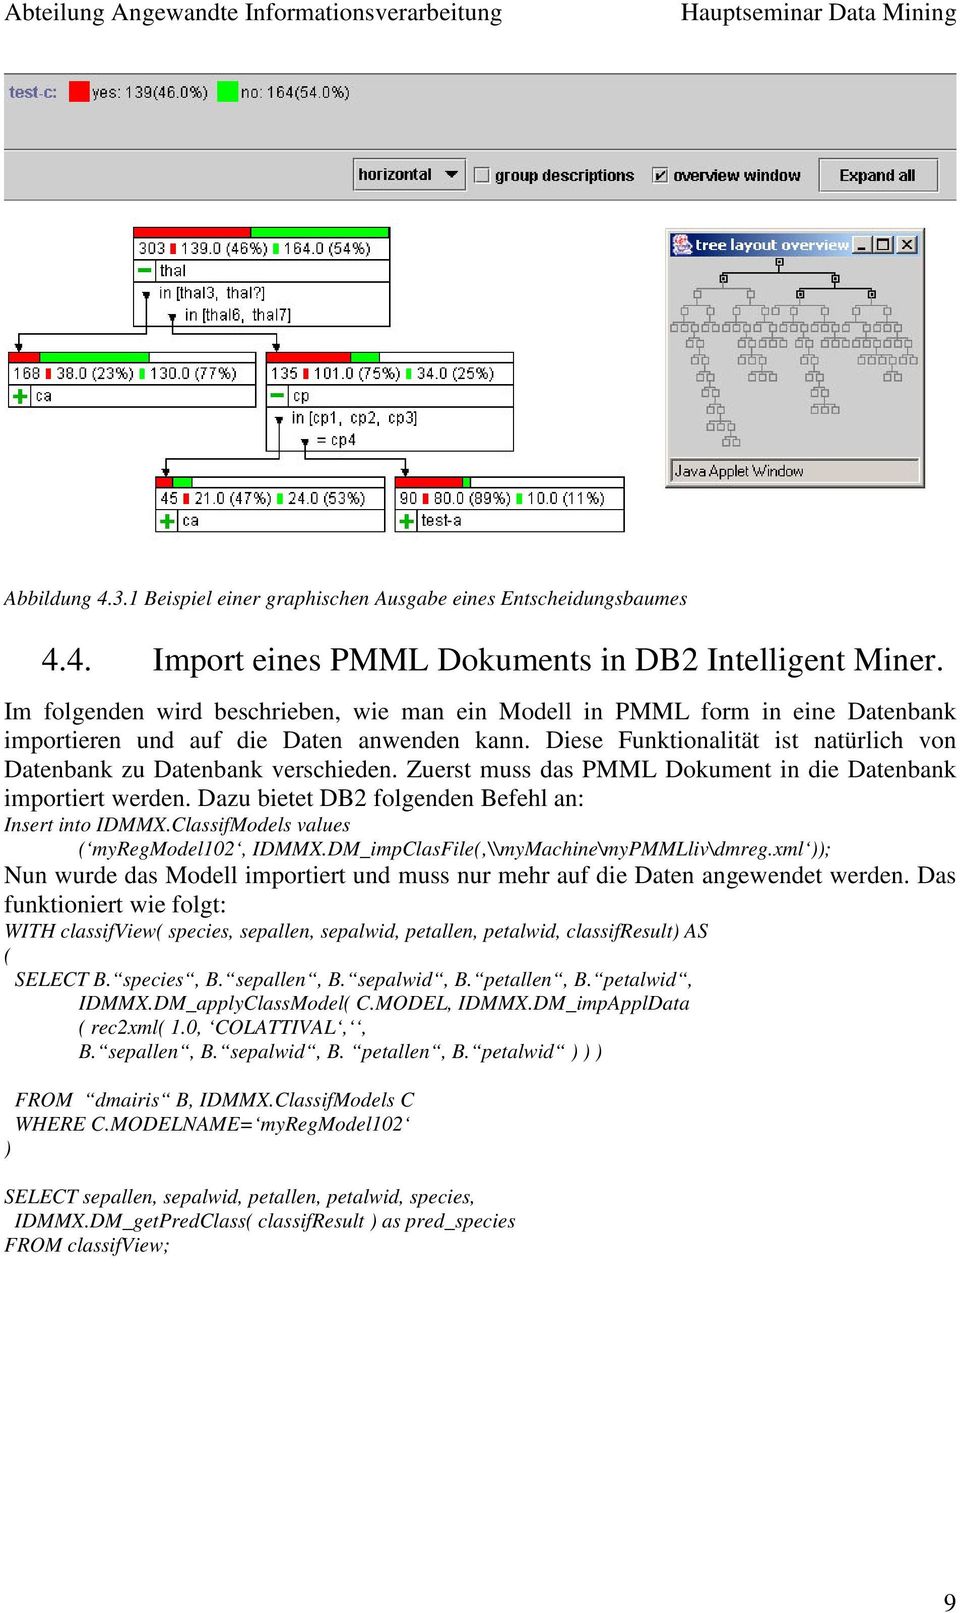 Zuerst muss das PMML Dokument in die Datenbank importiert werden. Dazu bietet DB2 folgenden Befehl an: Insert into IDMMX.ClassifModels values ( myregmodel102, IDMMX.